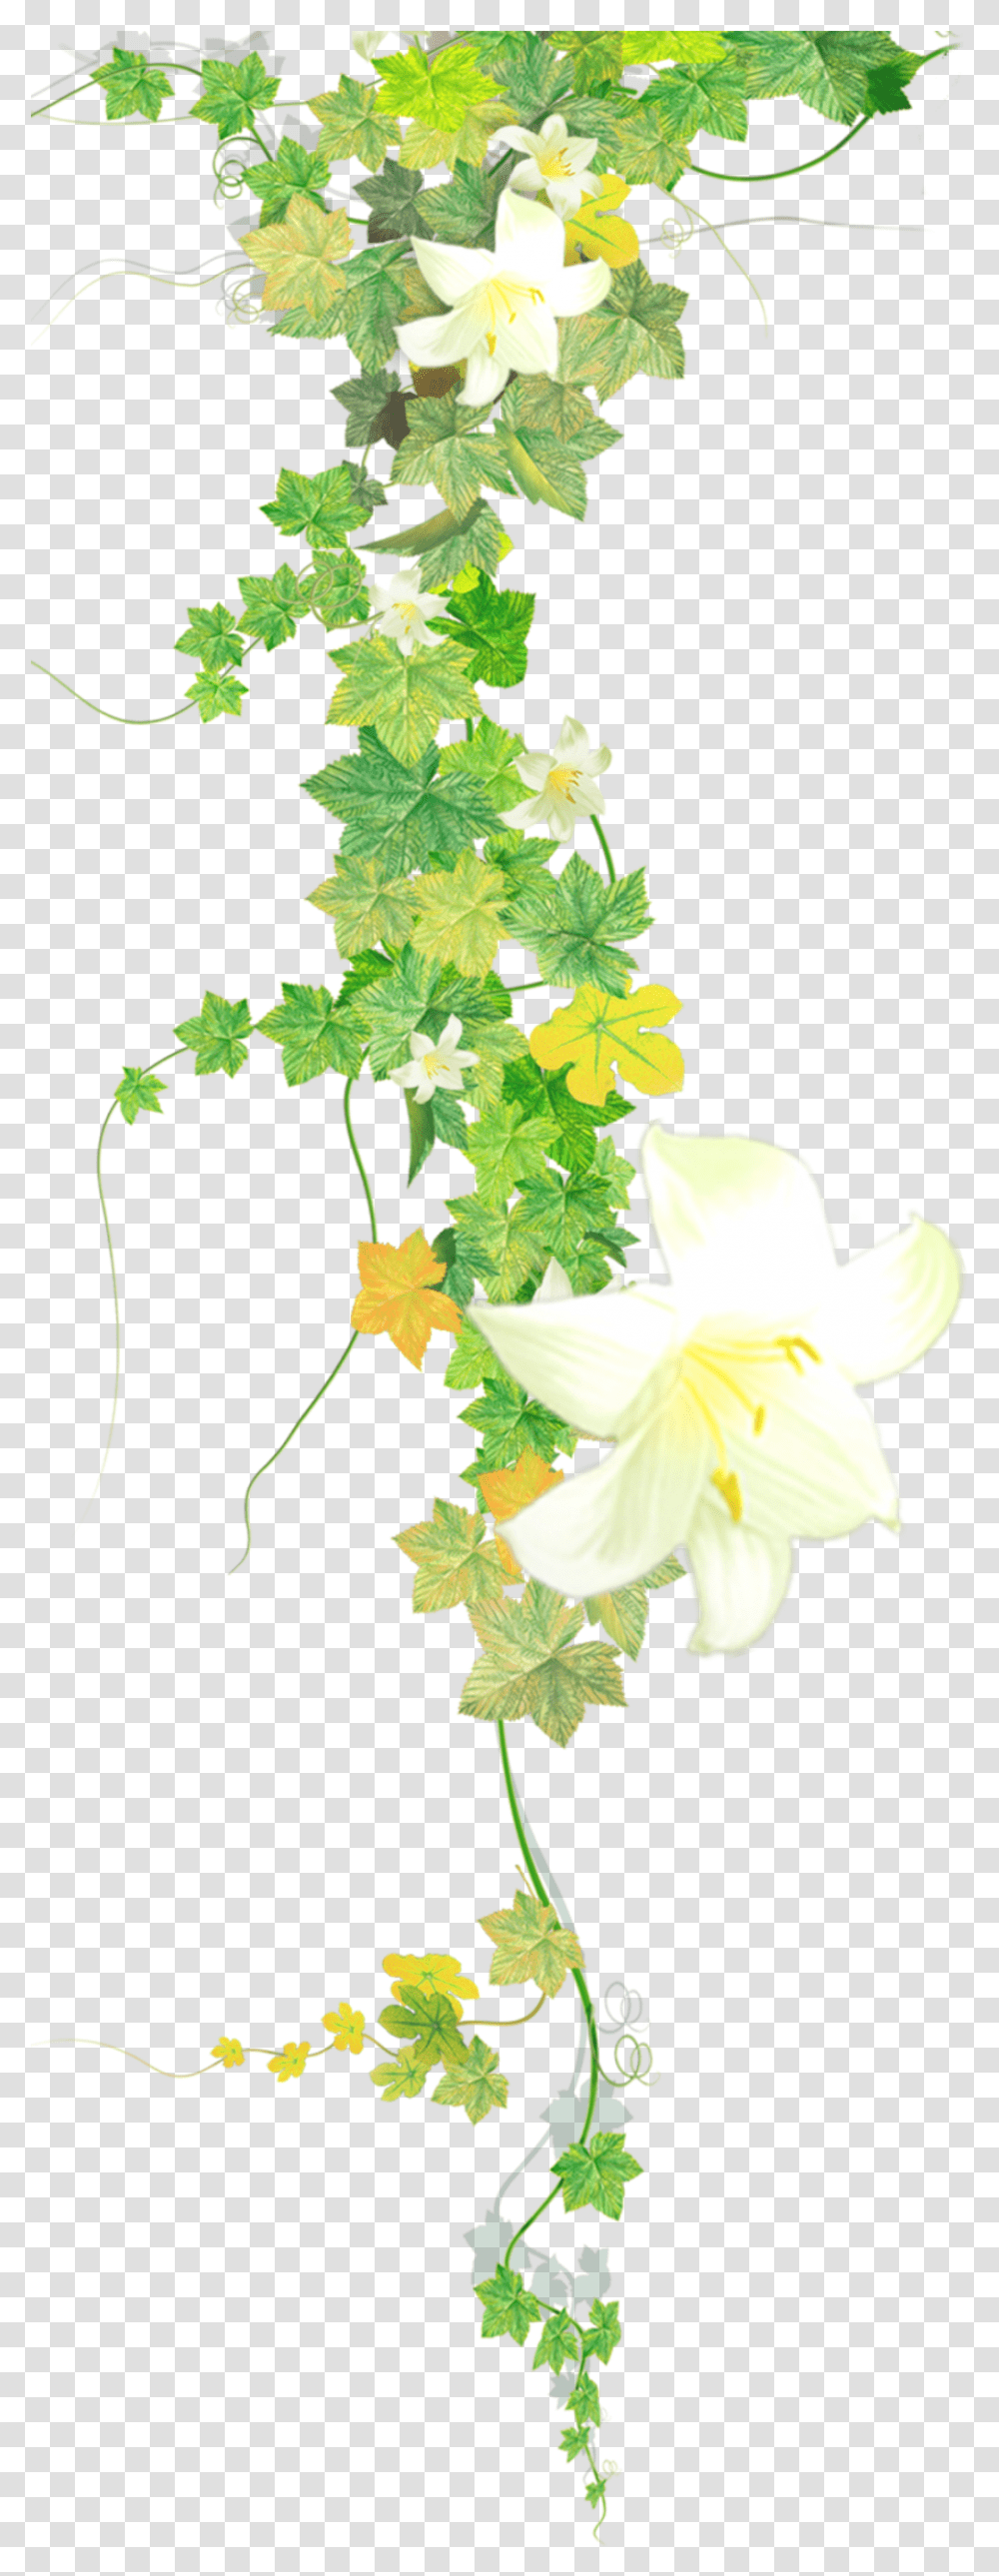 Download Vine Flower Vine, Plant, Leaf, Blossom, Tree Transparent Png